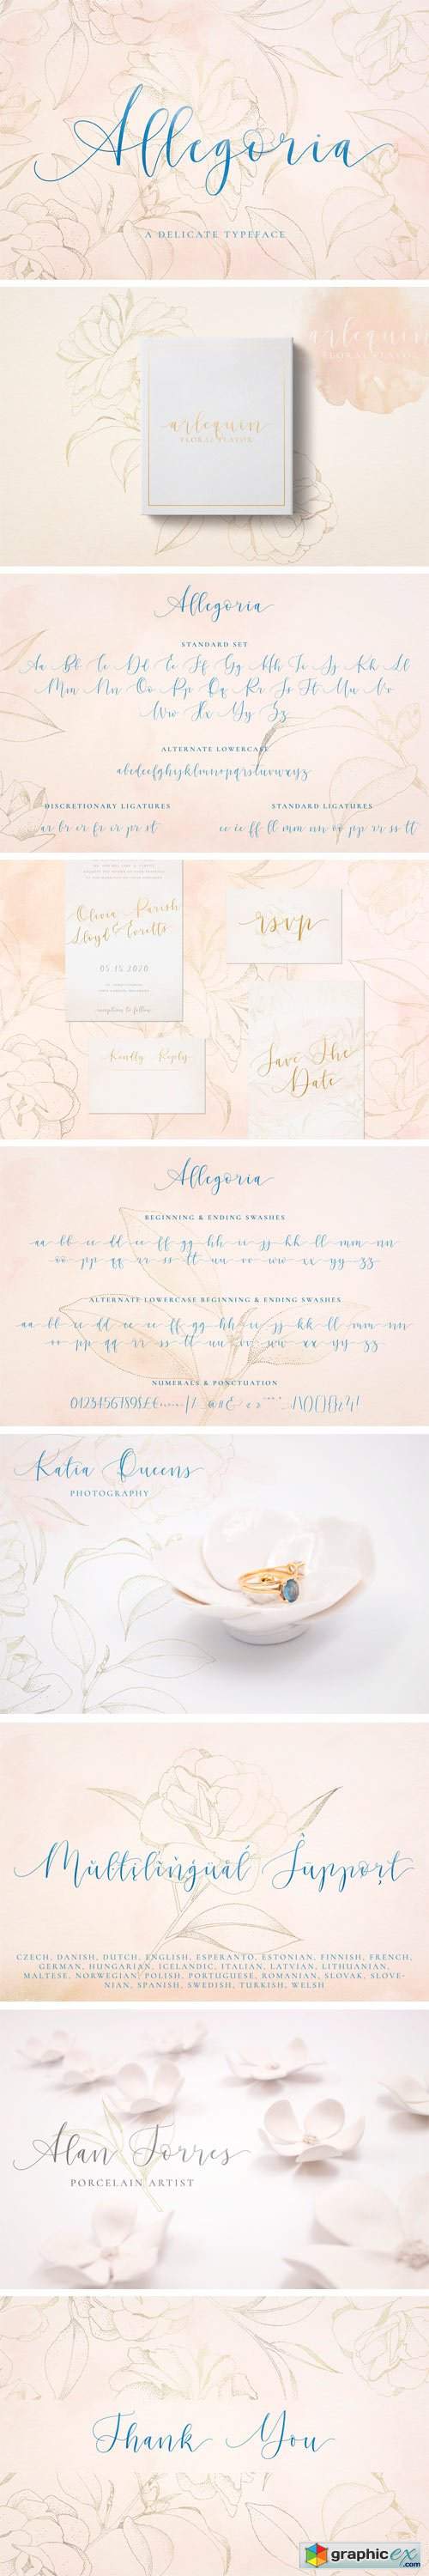 Allegoria - Elegant Calligraphy Font